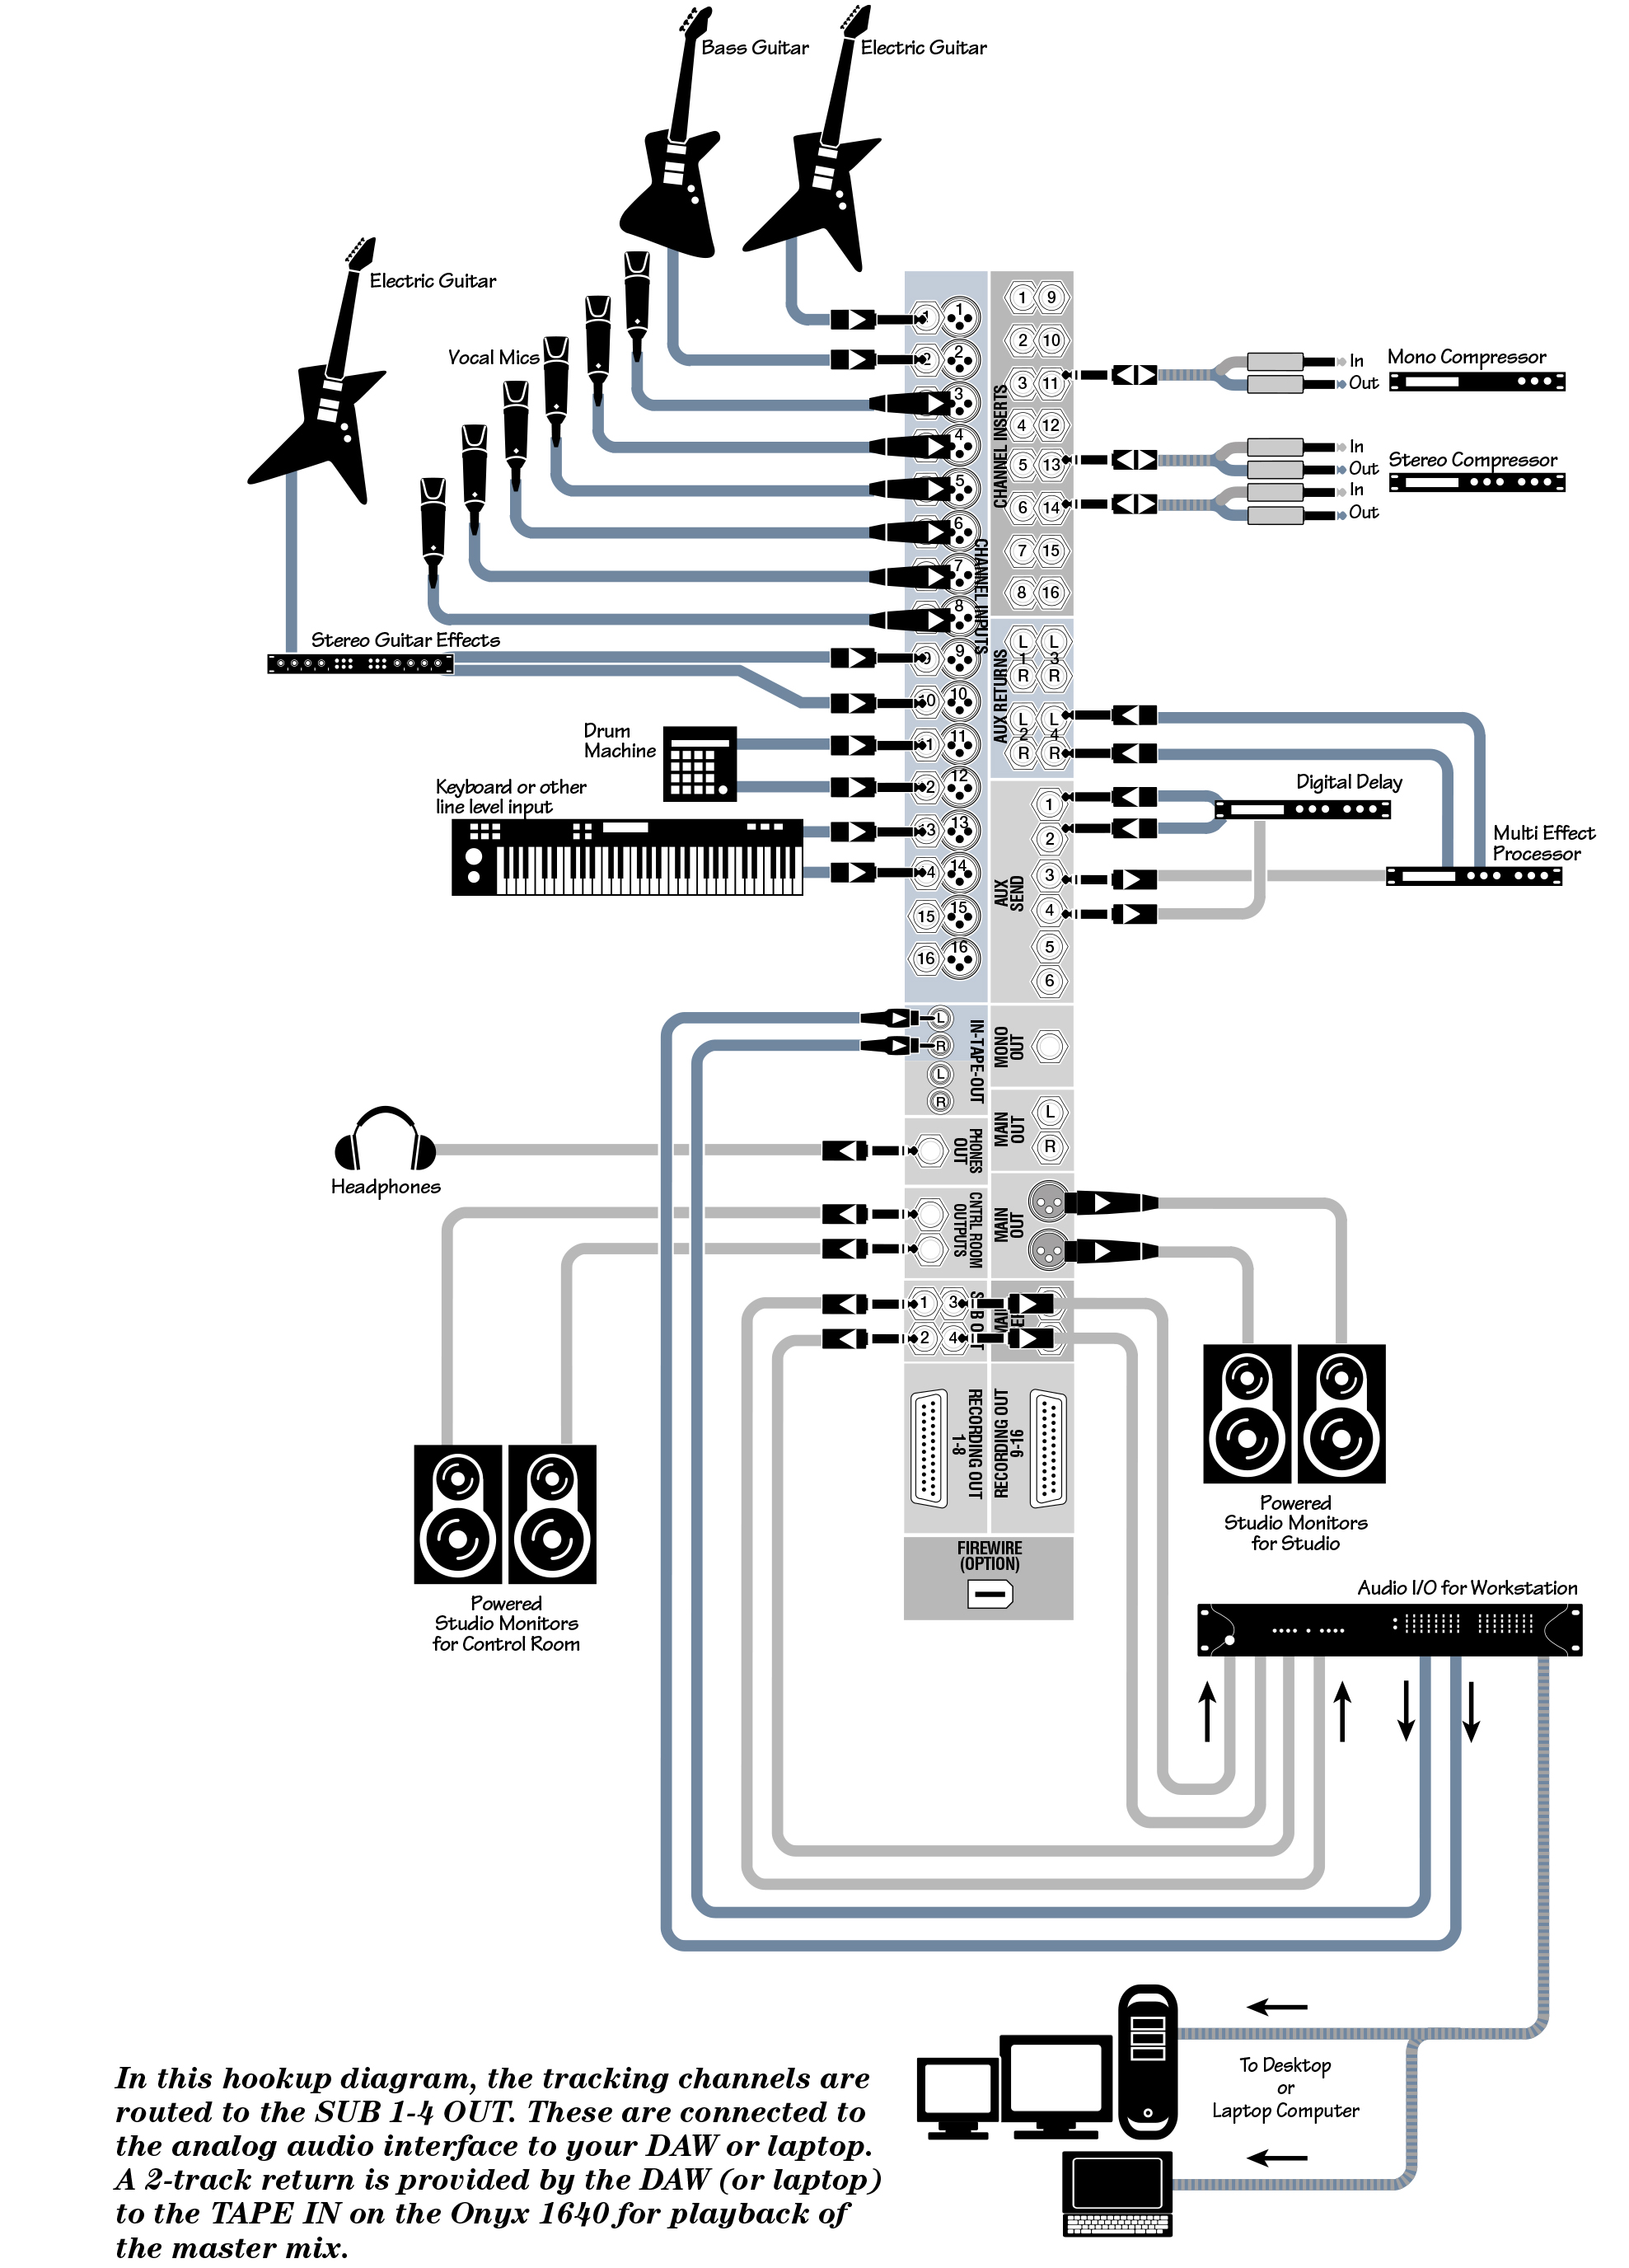 Схема подключения к микшерному пульту Mackie ONYX1620i